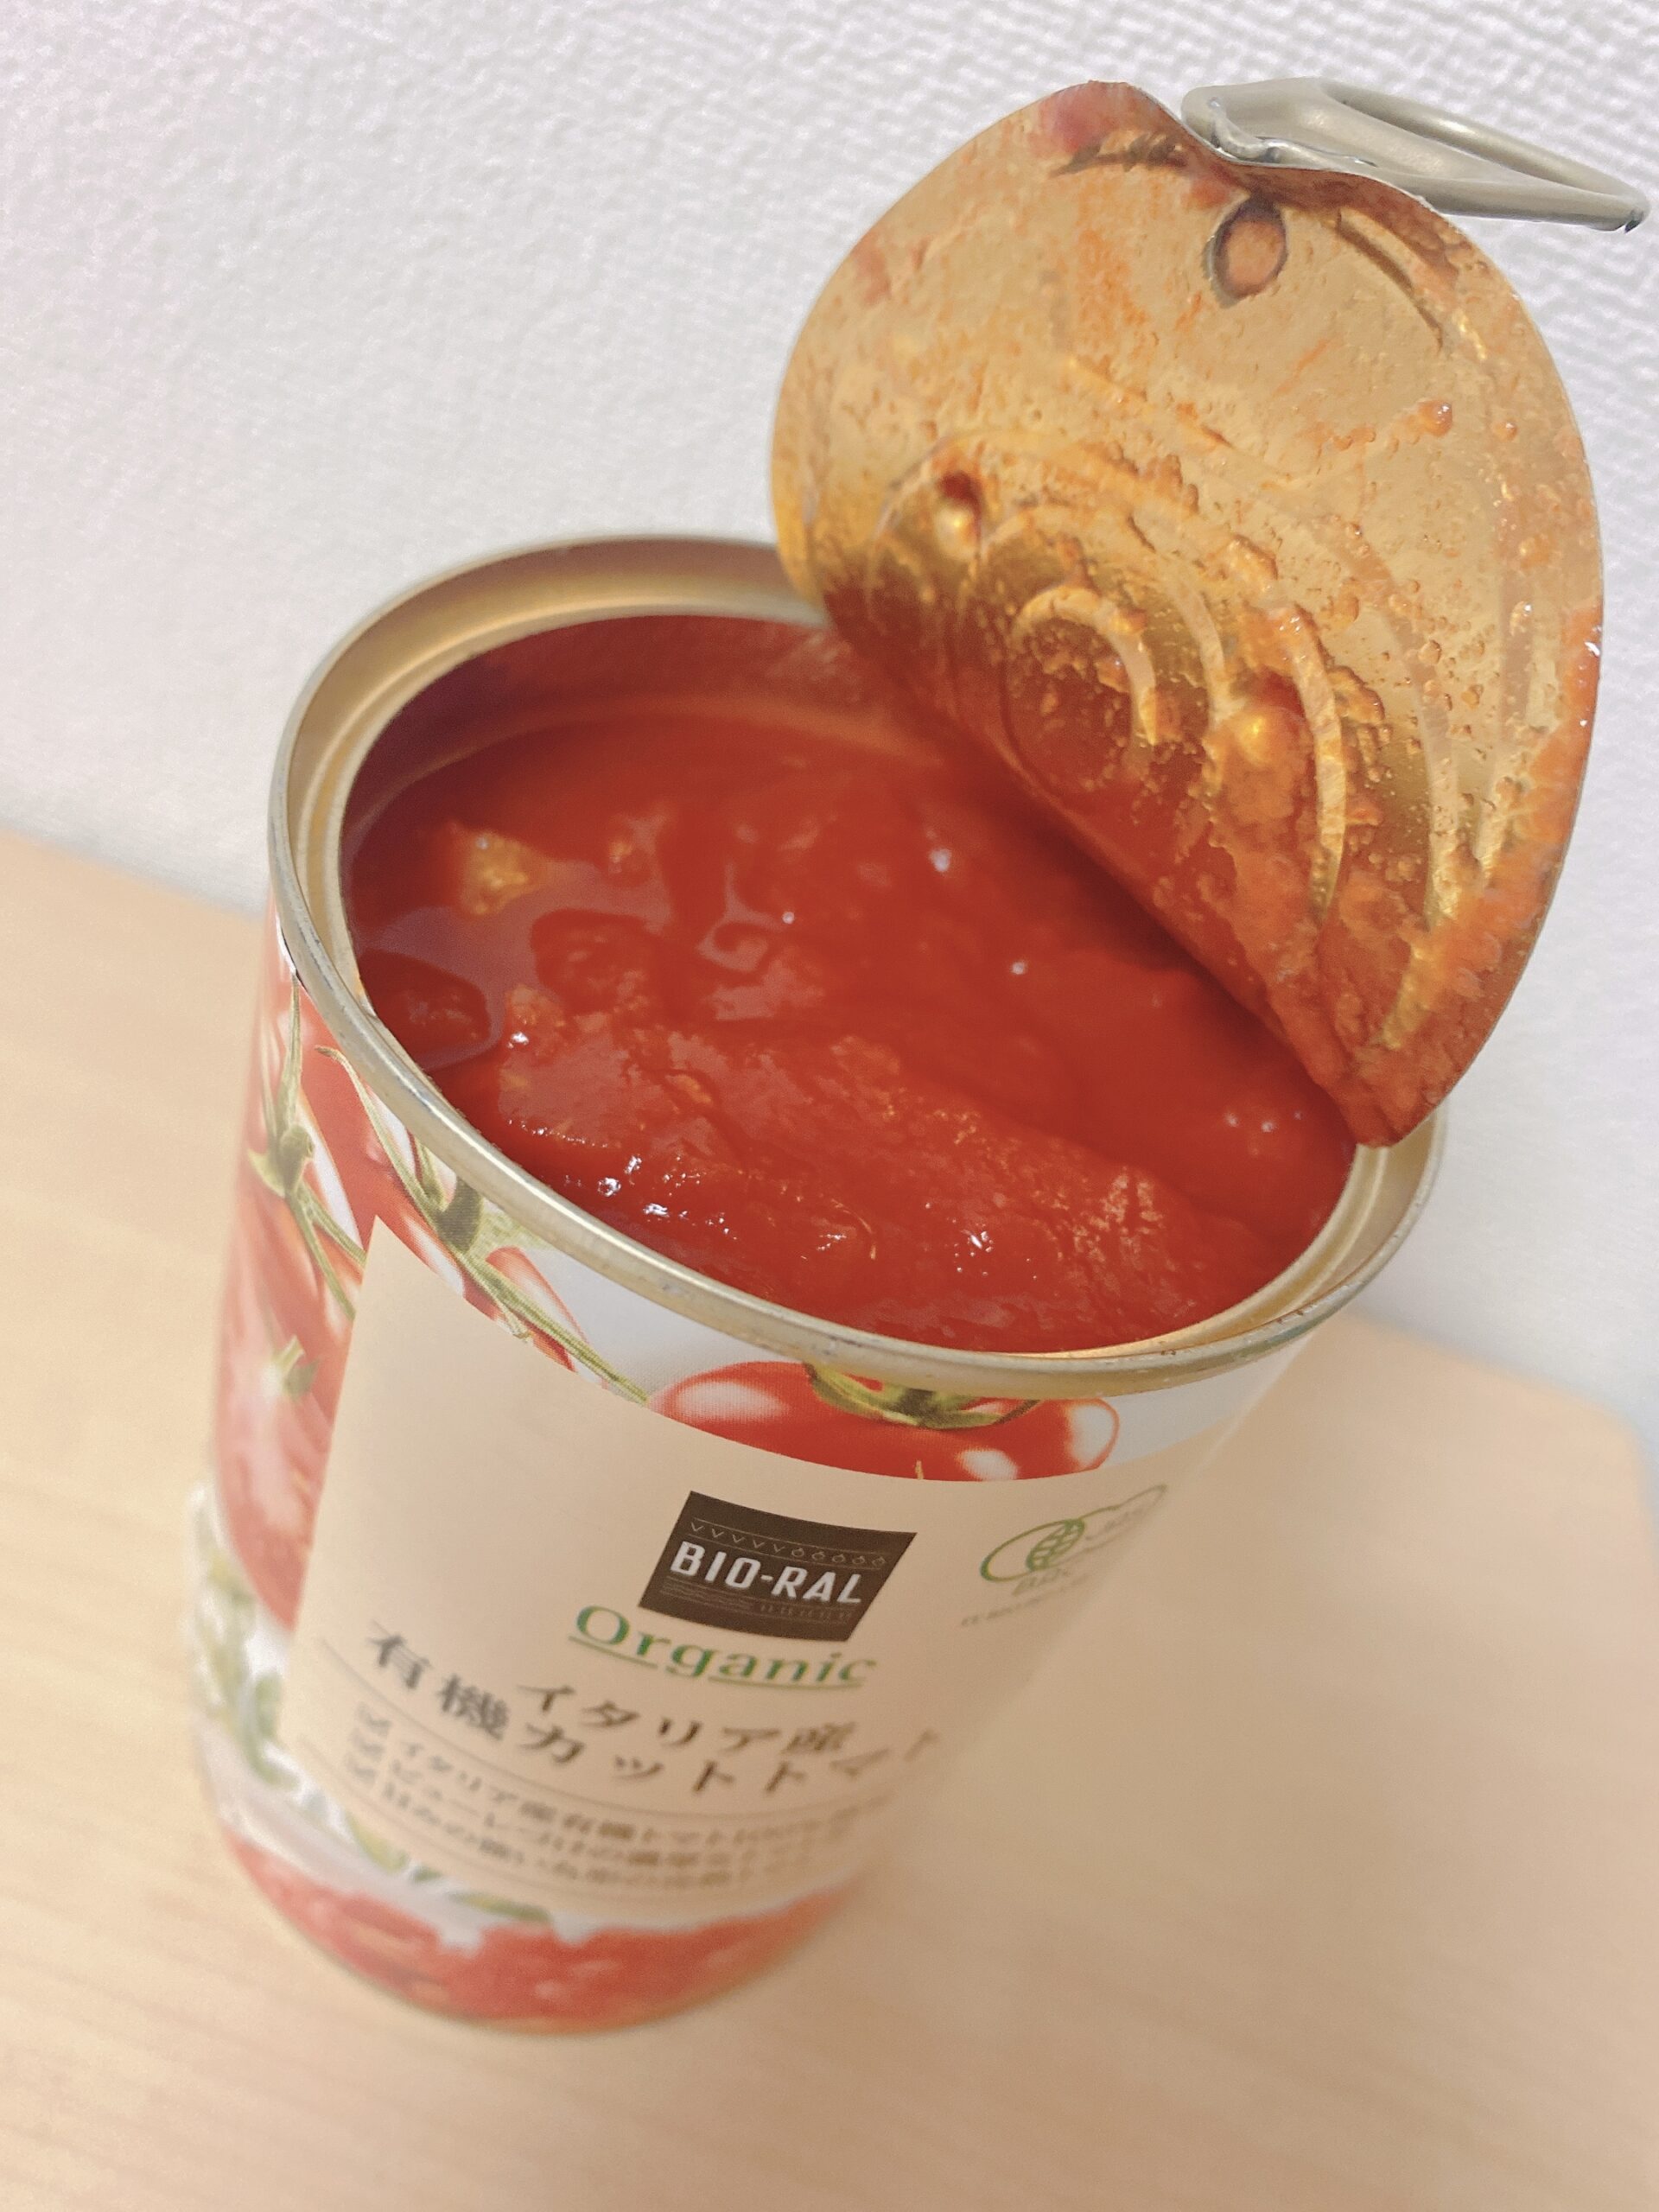 BIORAL_ビオラル_有機JASオーガニック_イタリア産有機カットトマト缶_缶を開けた所